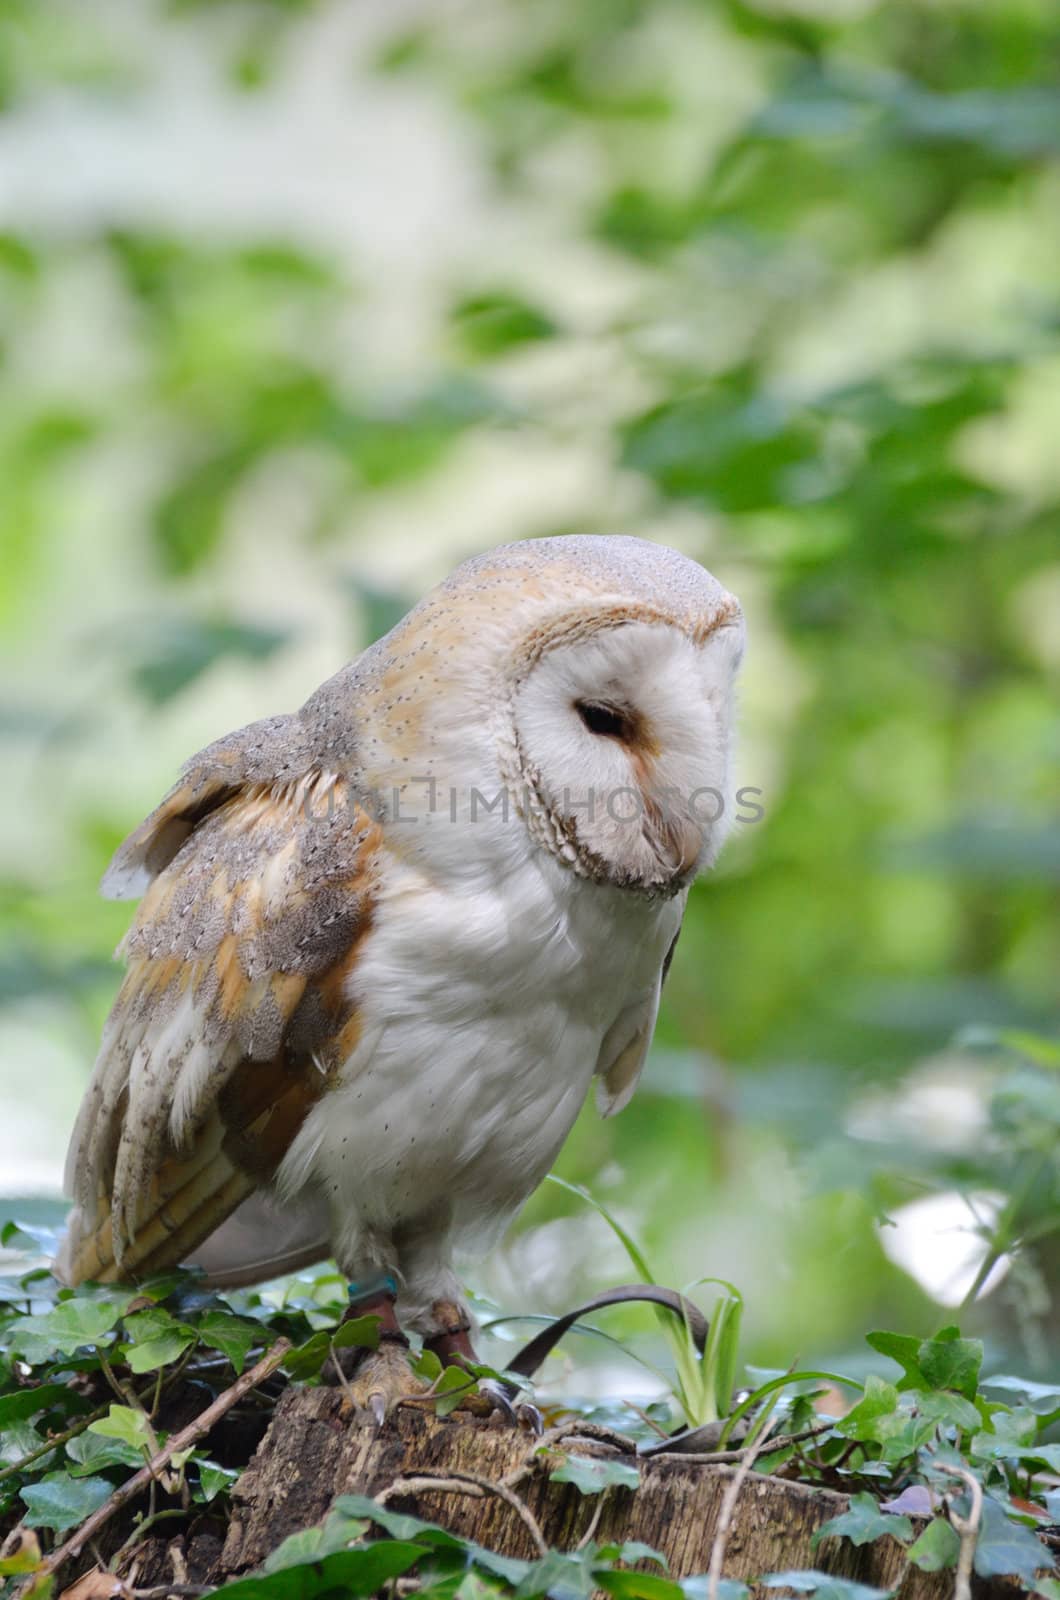 owl in wood by pauws99